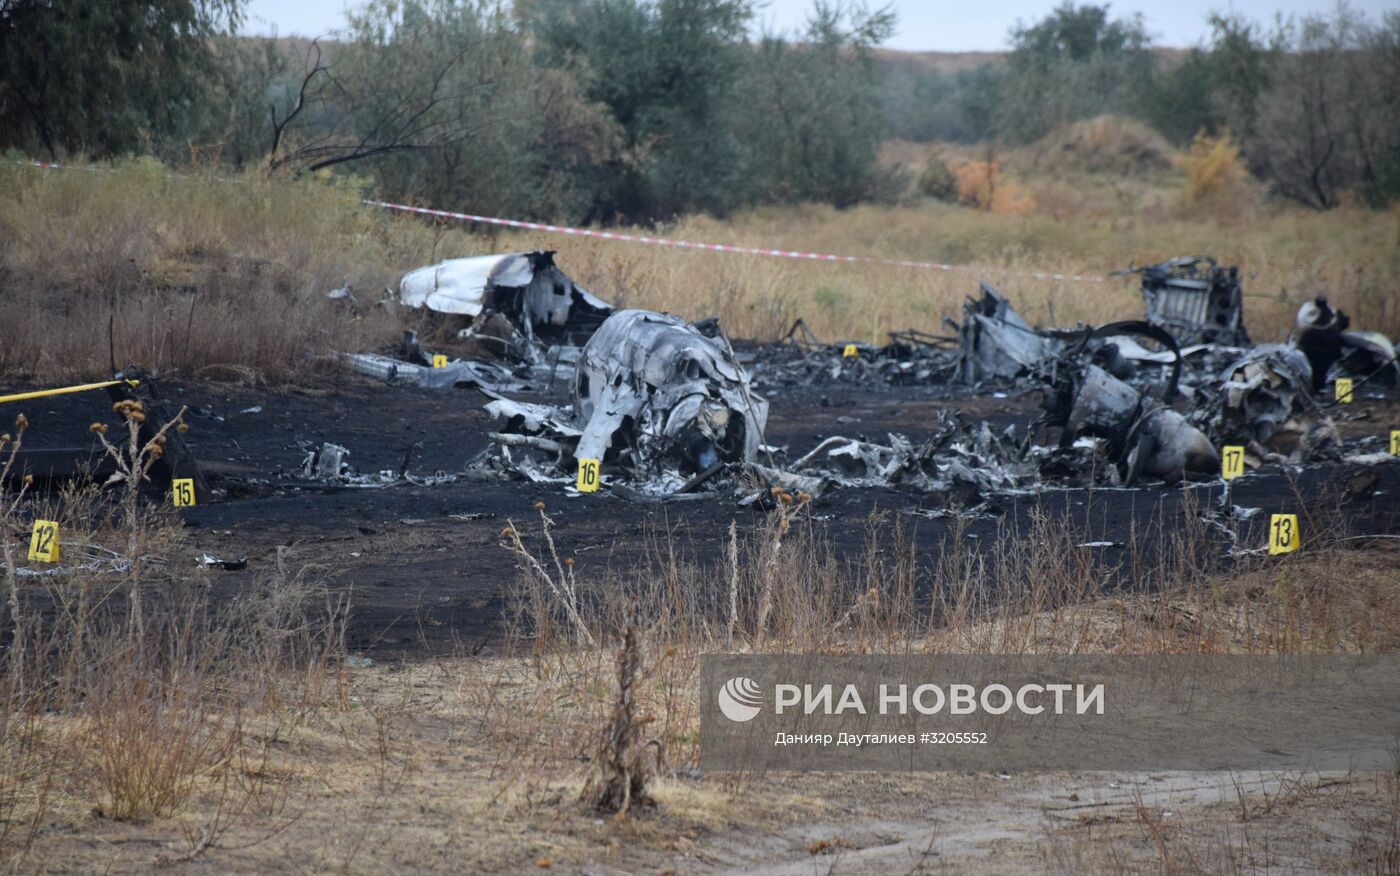 Ситуация на месте крушения самолета Ан-28 в Казахстане